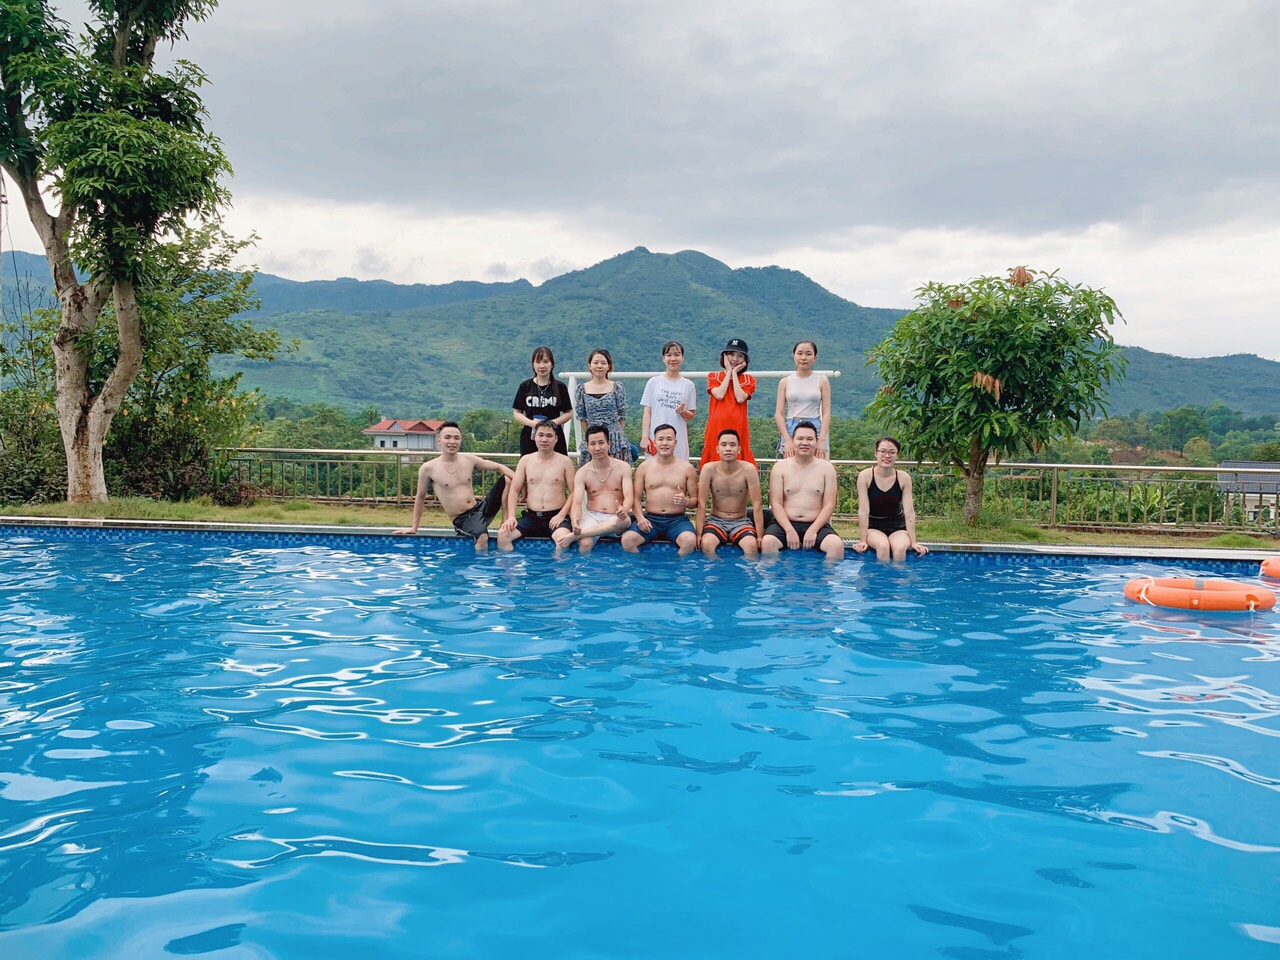 Khám phá Top 5 Resort có bể nước nóng gần Hà Nội thích hợp đi vào ...